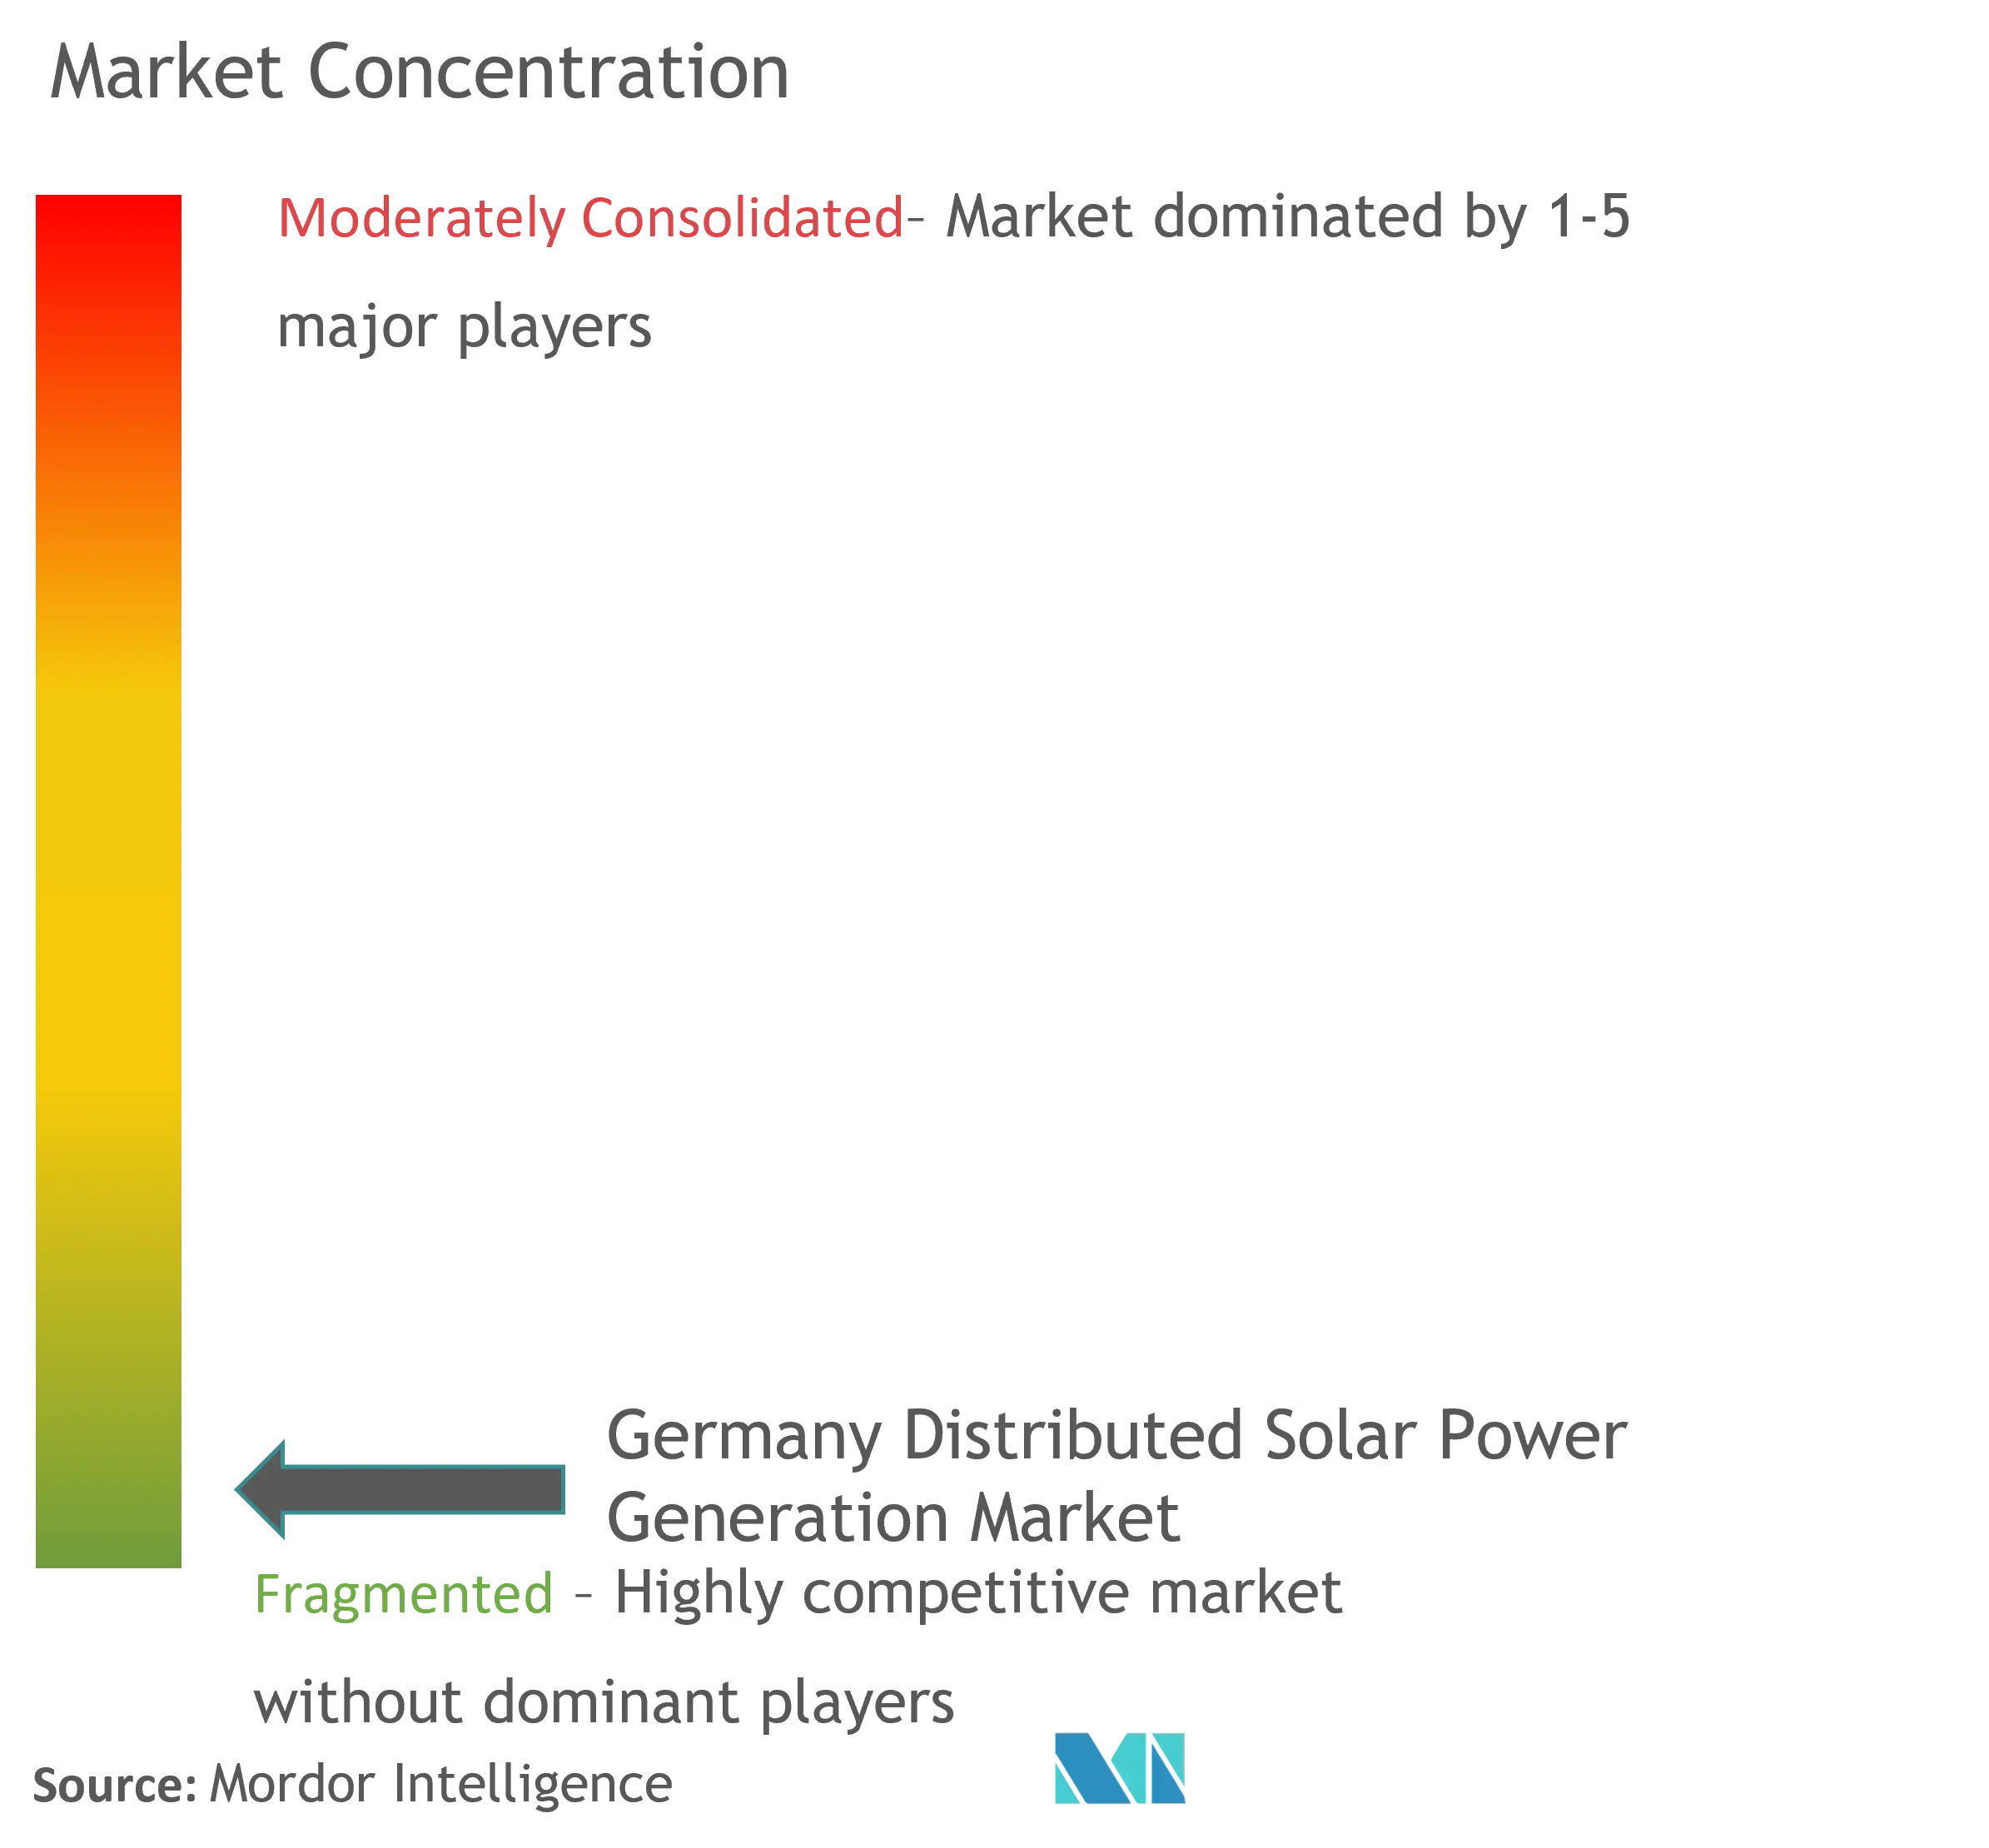 ドイツの分散型太陽光発電市場集中度